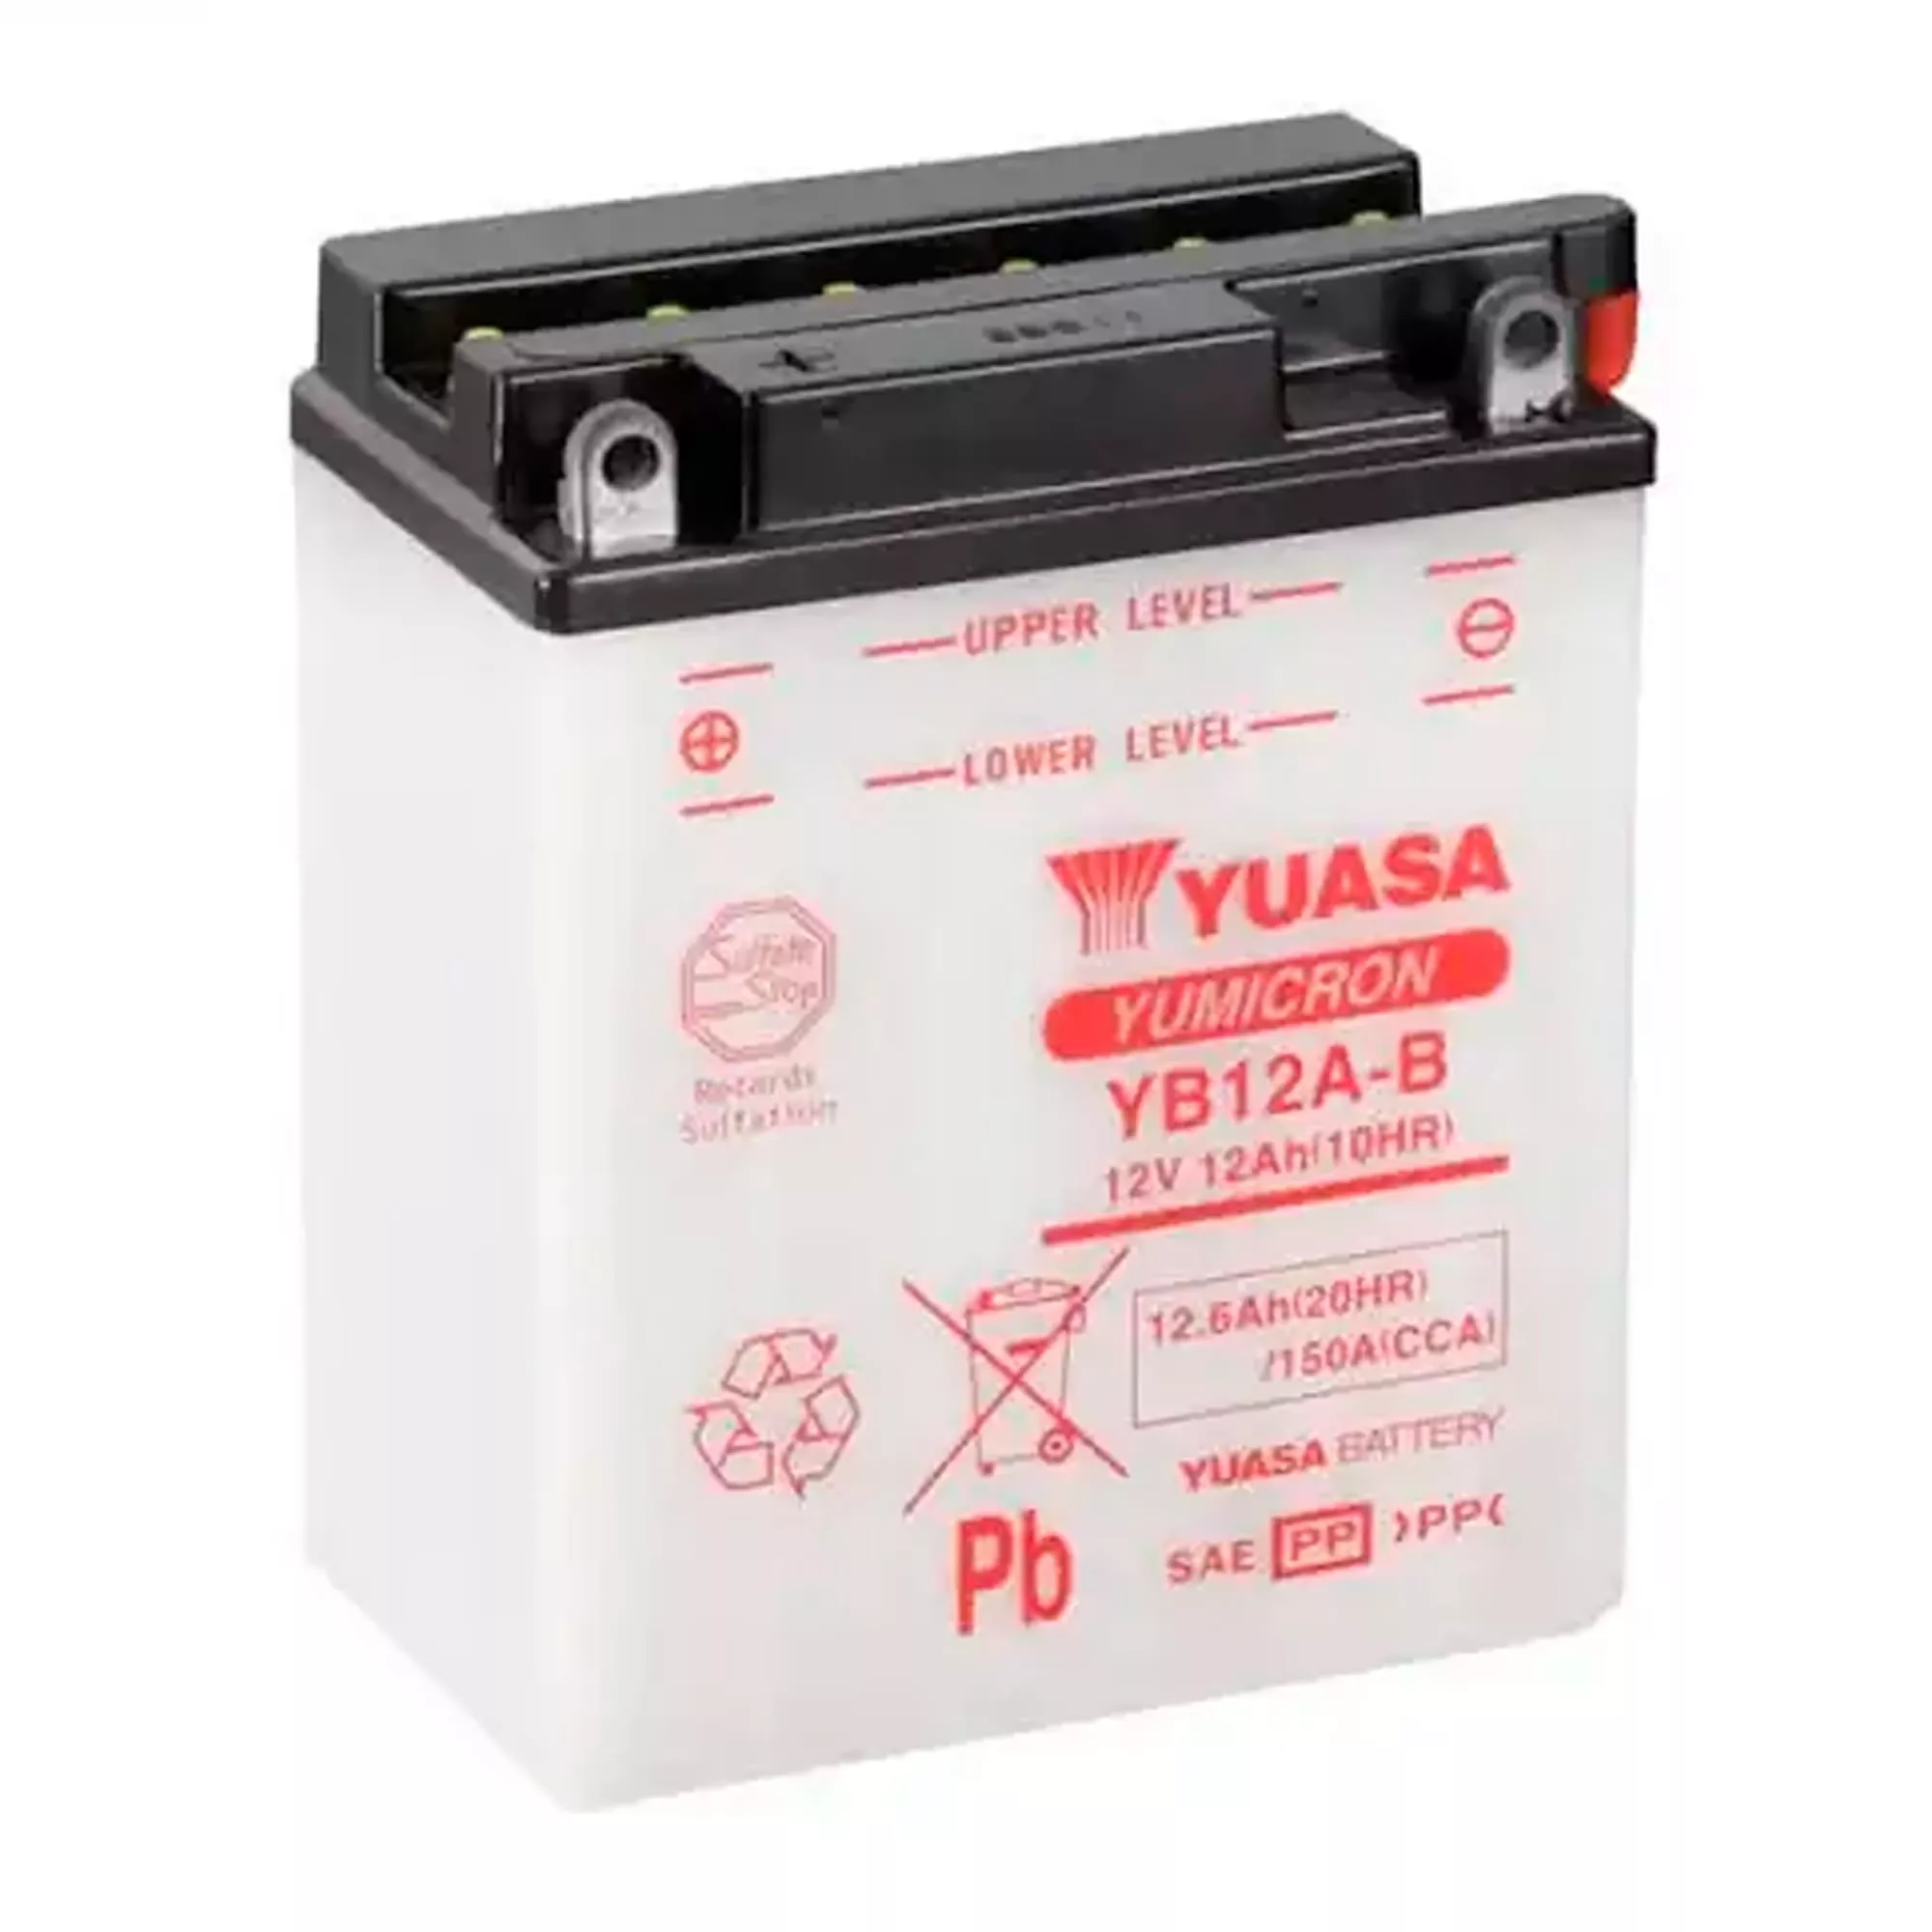 Мото аккумулятор YUASA кислотный YUASA 12Ah 150A Аз (YB12A-B)